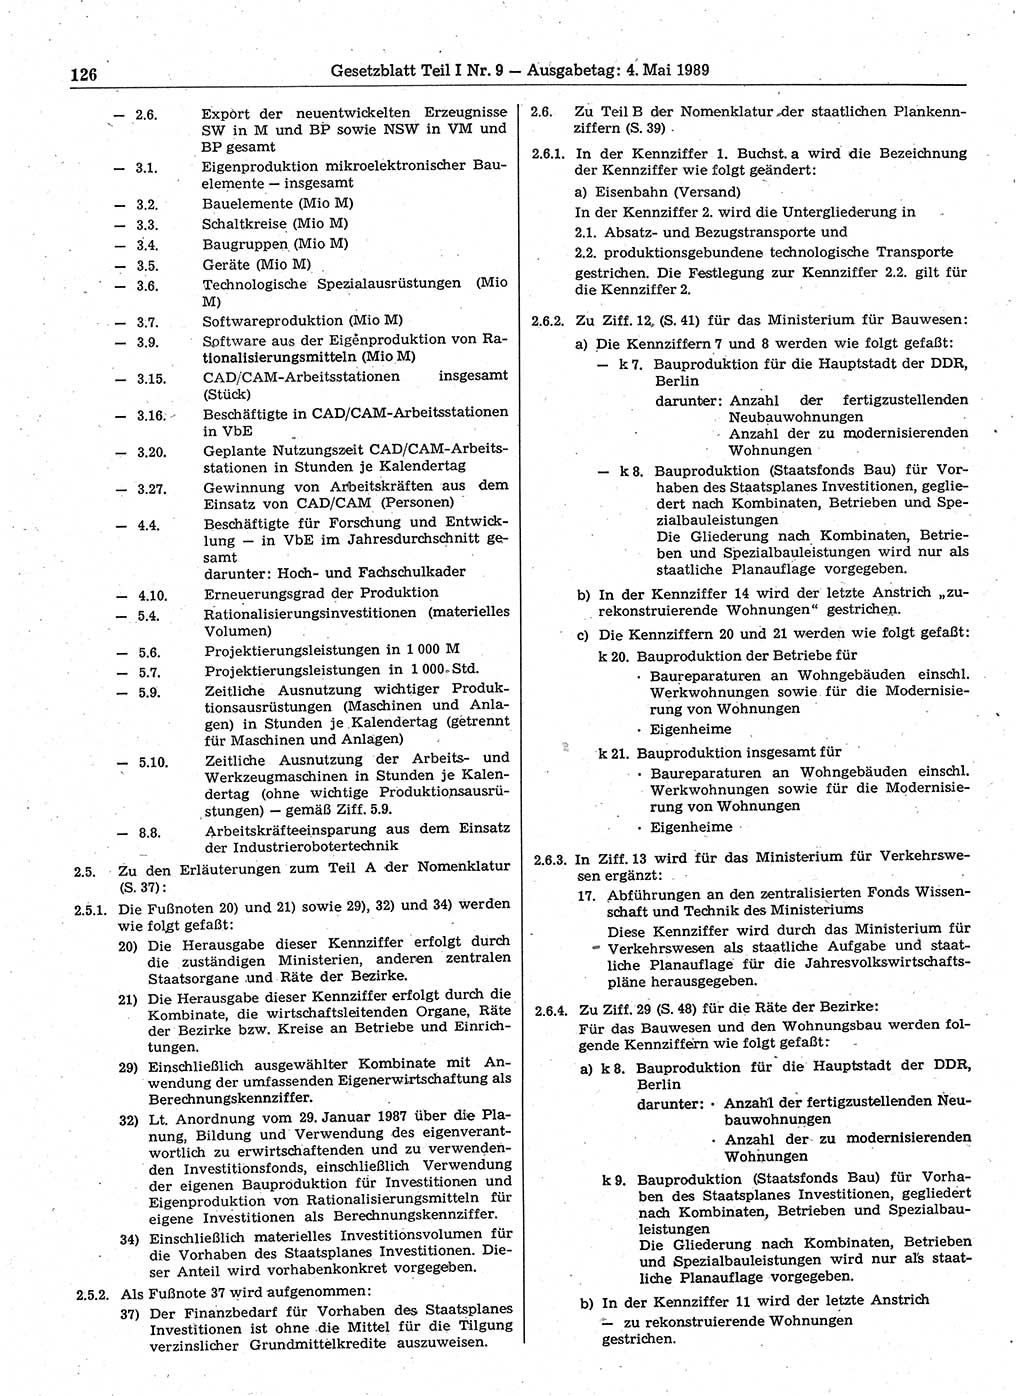 Gesetzblatt (GBl.) der Deutschen Demokratischen Republik (DDR) Teil Ⅰ 1989, Seite 126 (GBl. DDR Ⅰ 1989, S. 126)